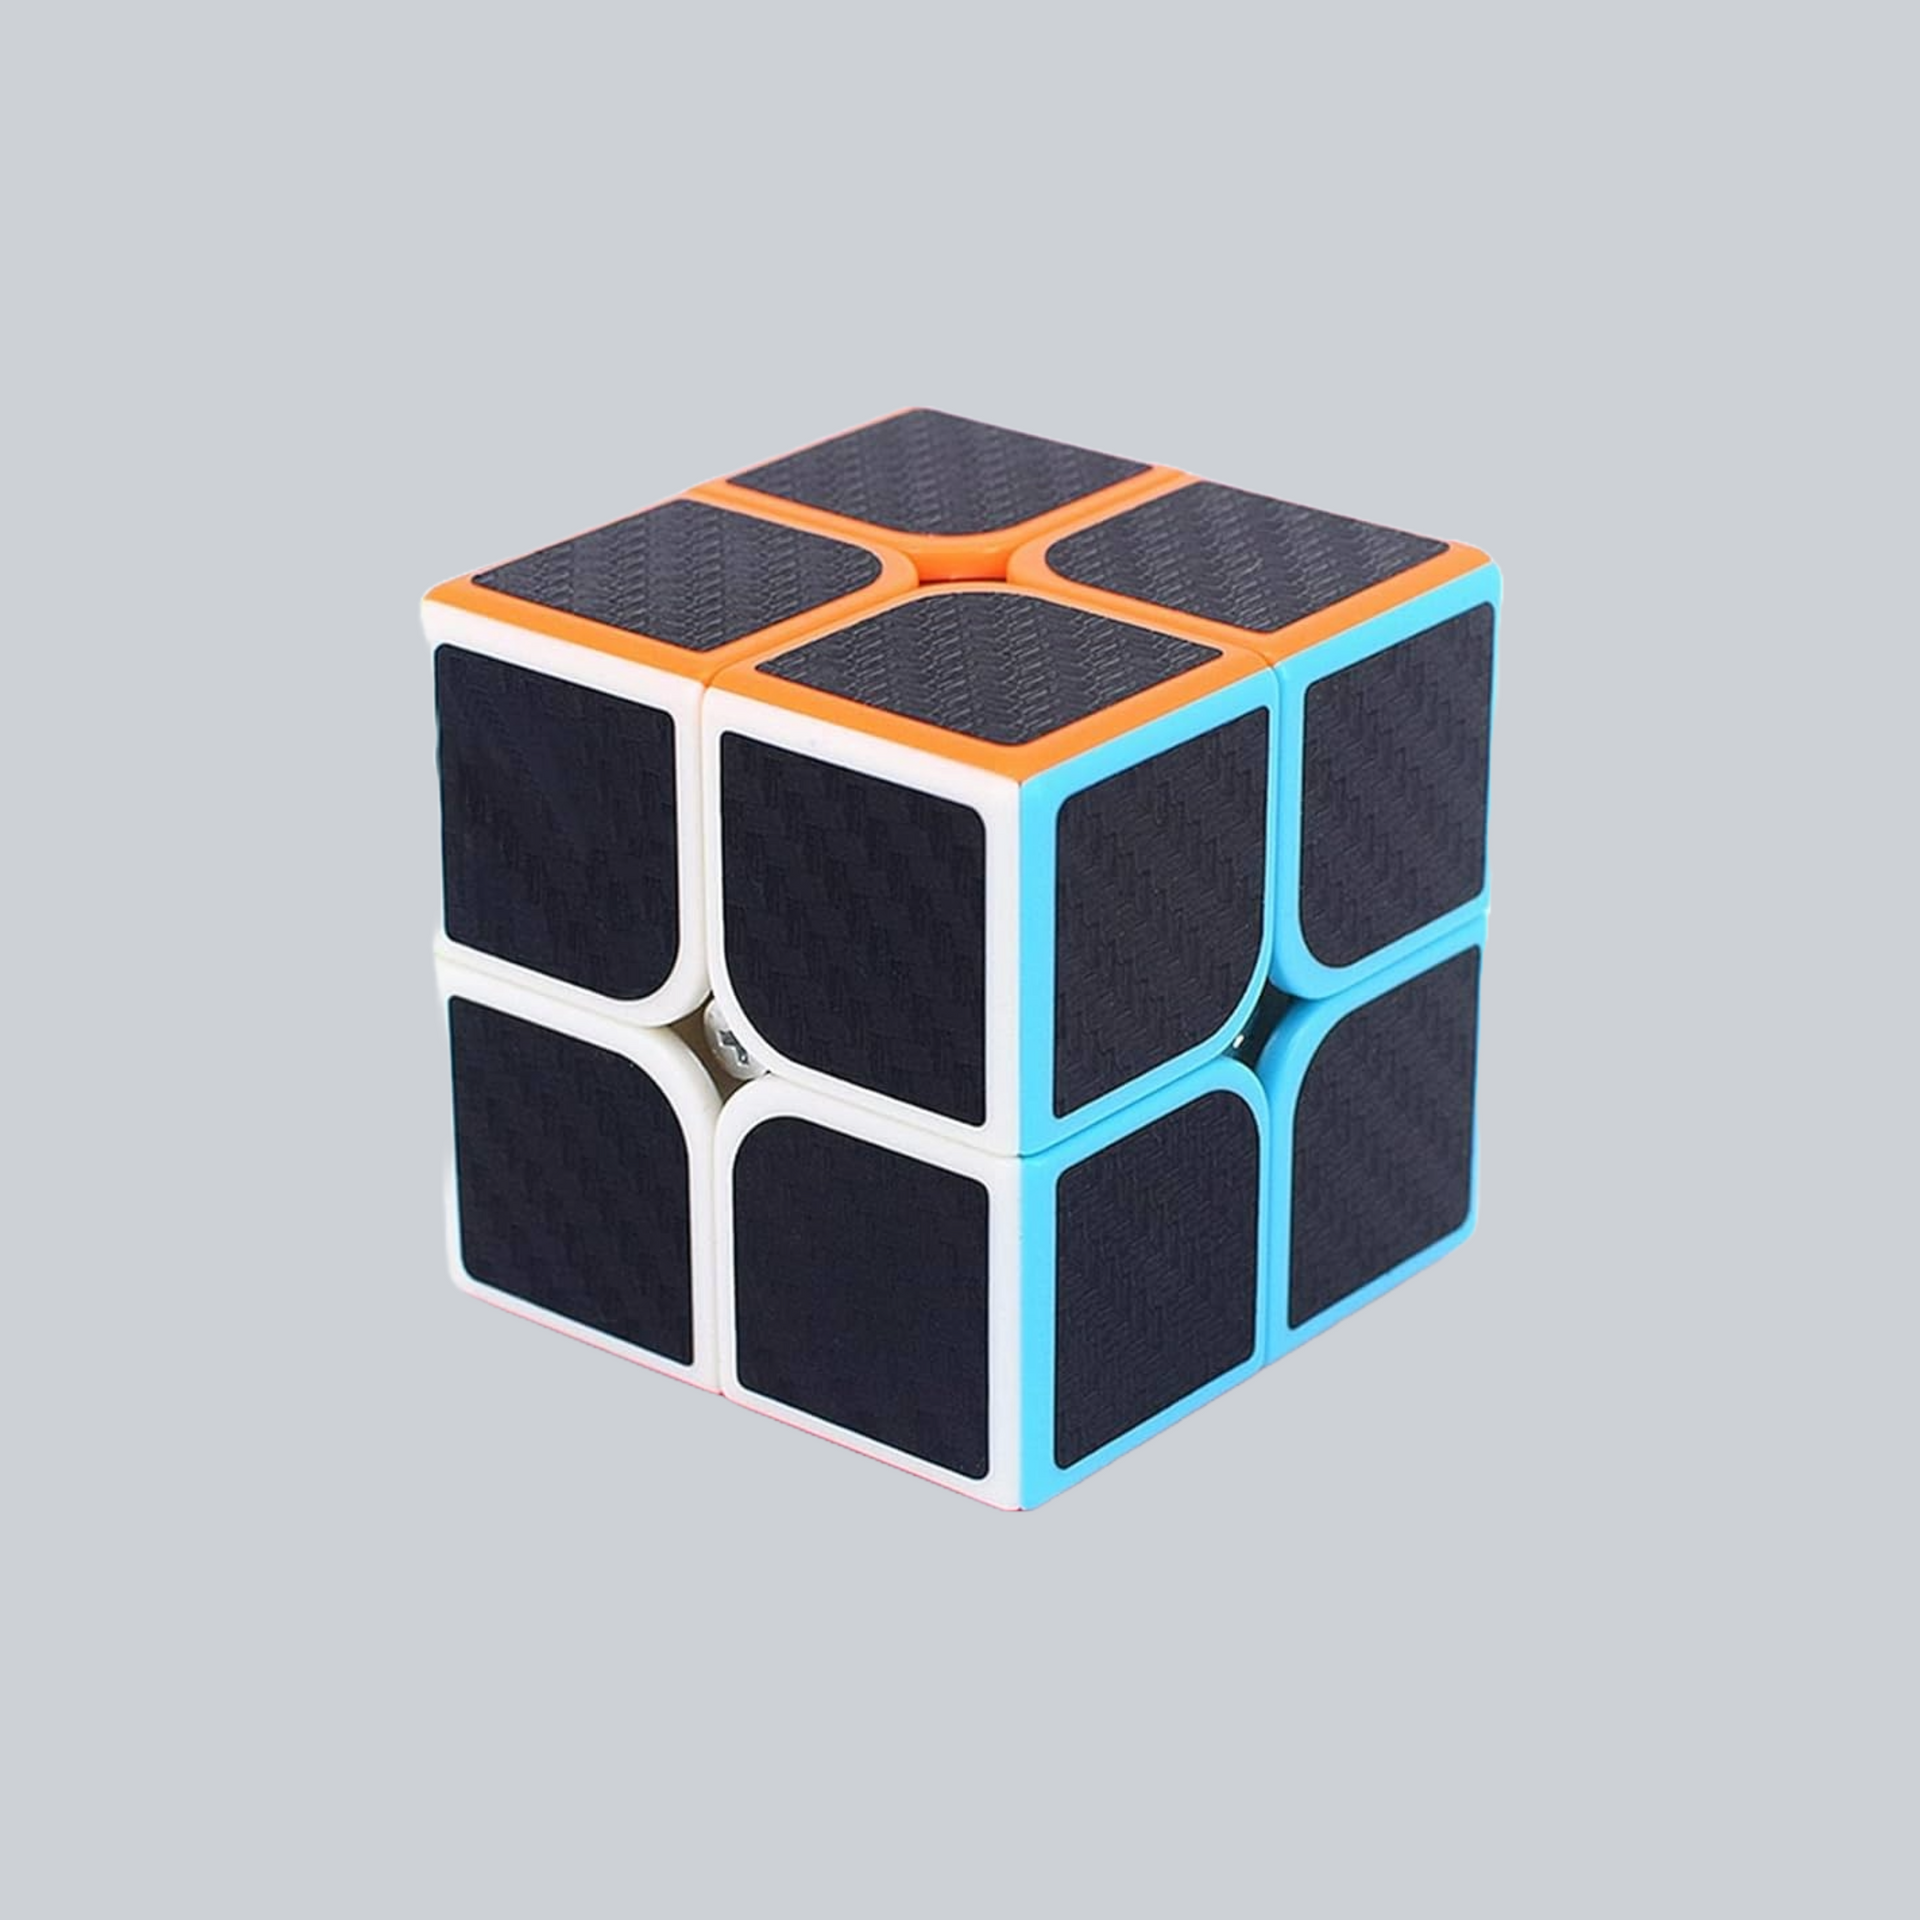 carbon fiber 2x2 ruibks cube